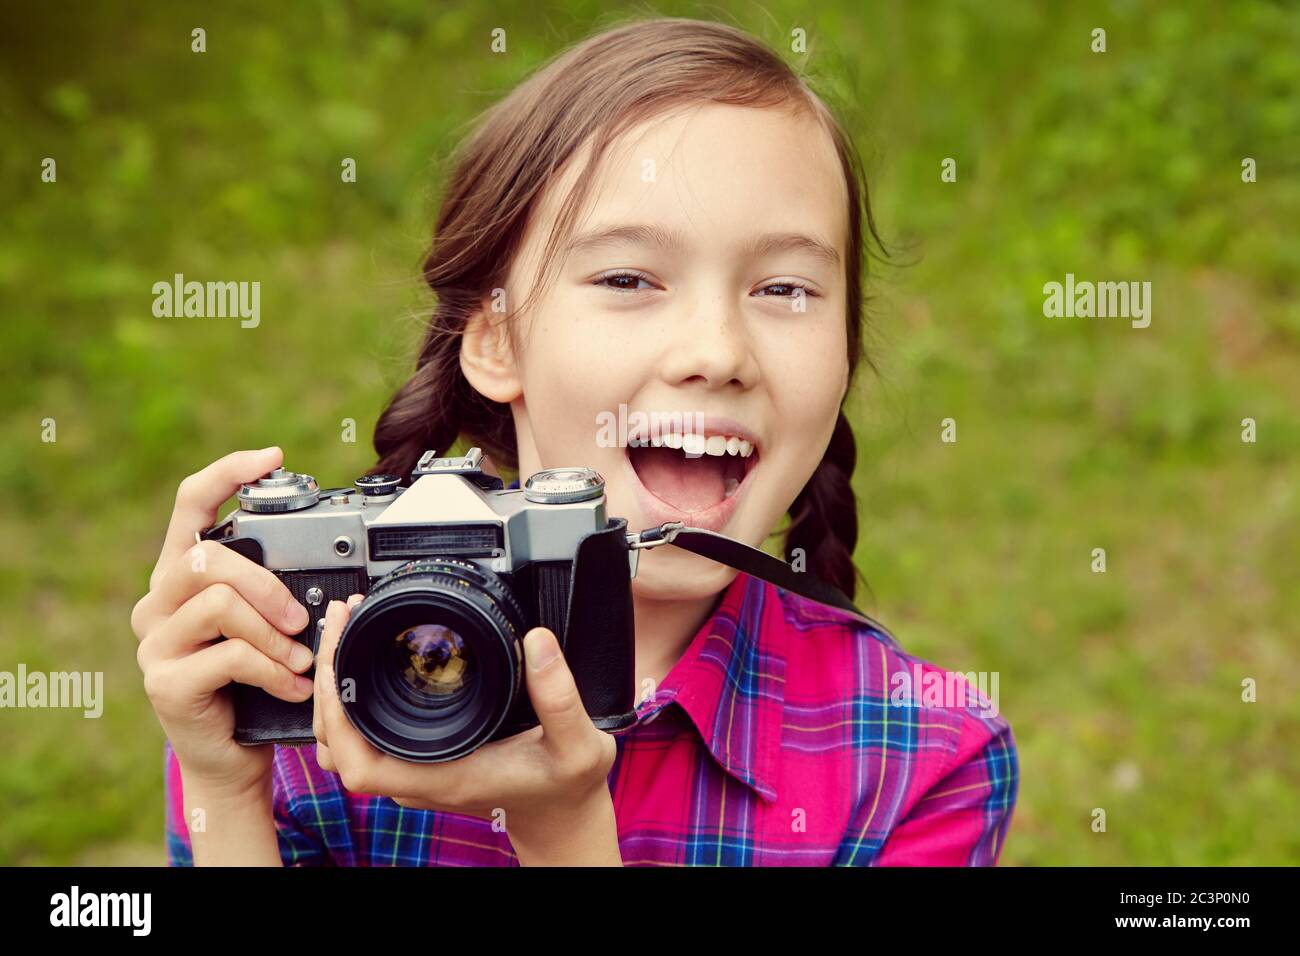 niña adolescente con cámara fotográfica. antigua cámara